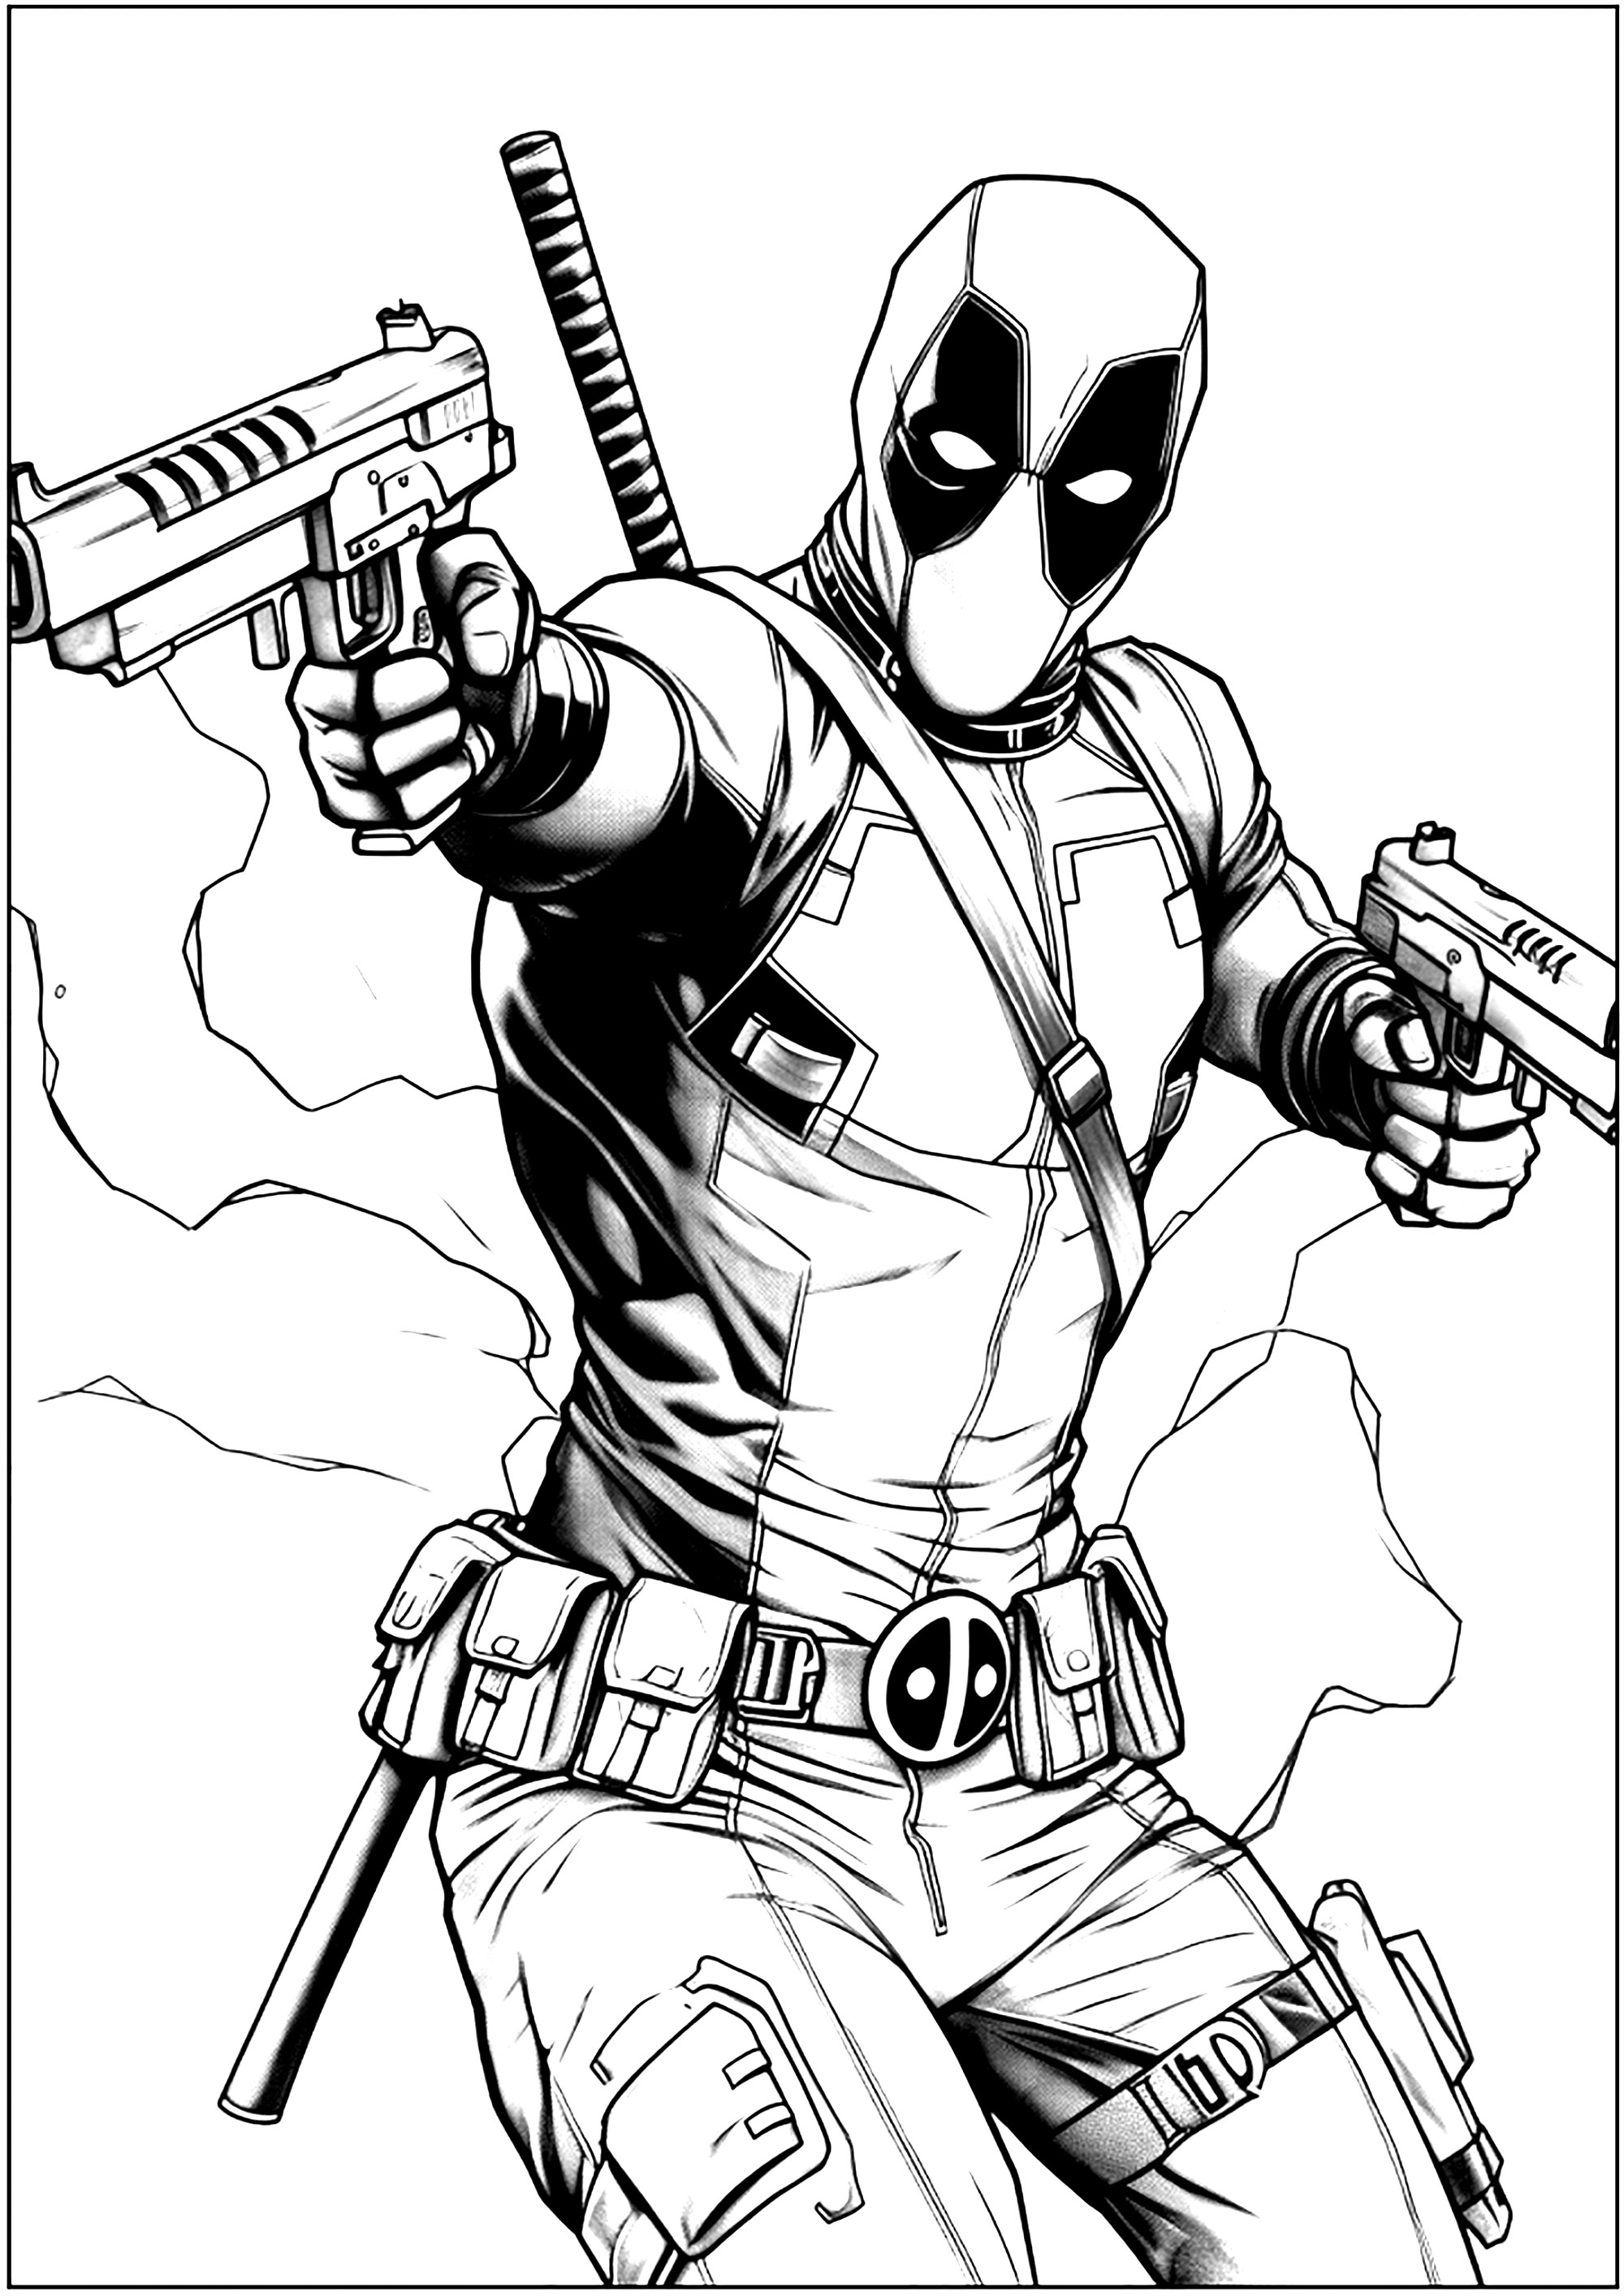 Deadpool in voller Aktion. Wade Wilson, ein ehemaliger Soldat der Special Forces, ist ein Söldner geworden. Nachdem er sich einem außergewöhnlichen Experiment unterzogen hat, das seine Heilkräfte beschleunigt, wird er zu Deadpool.